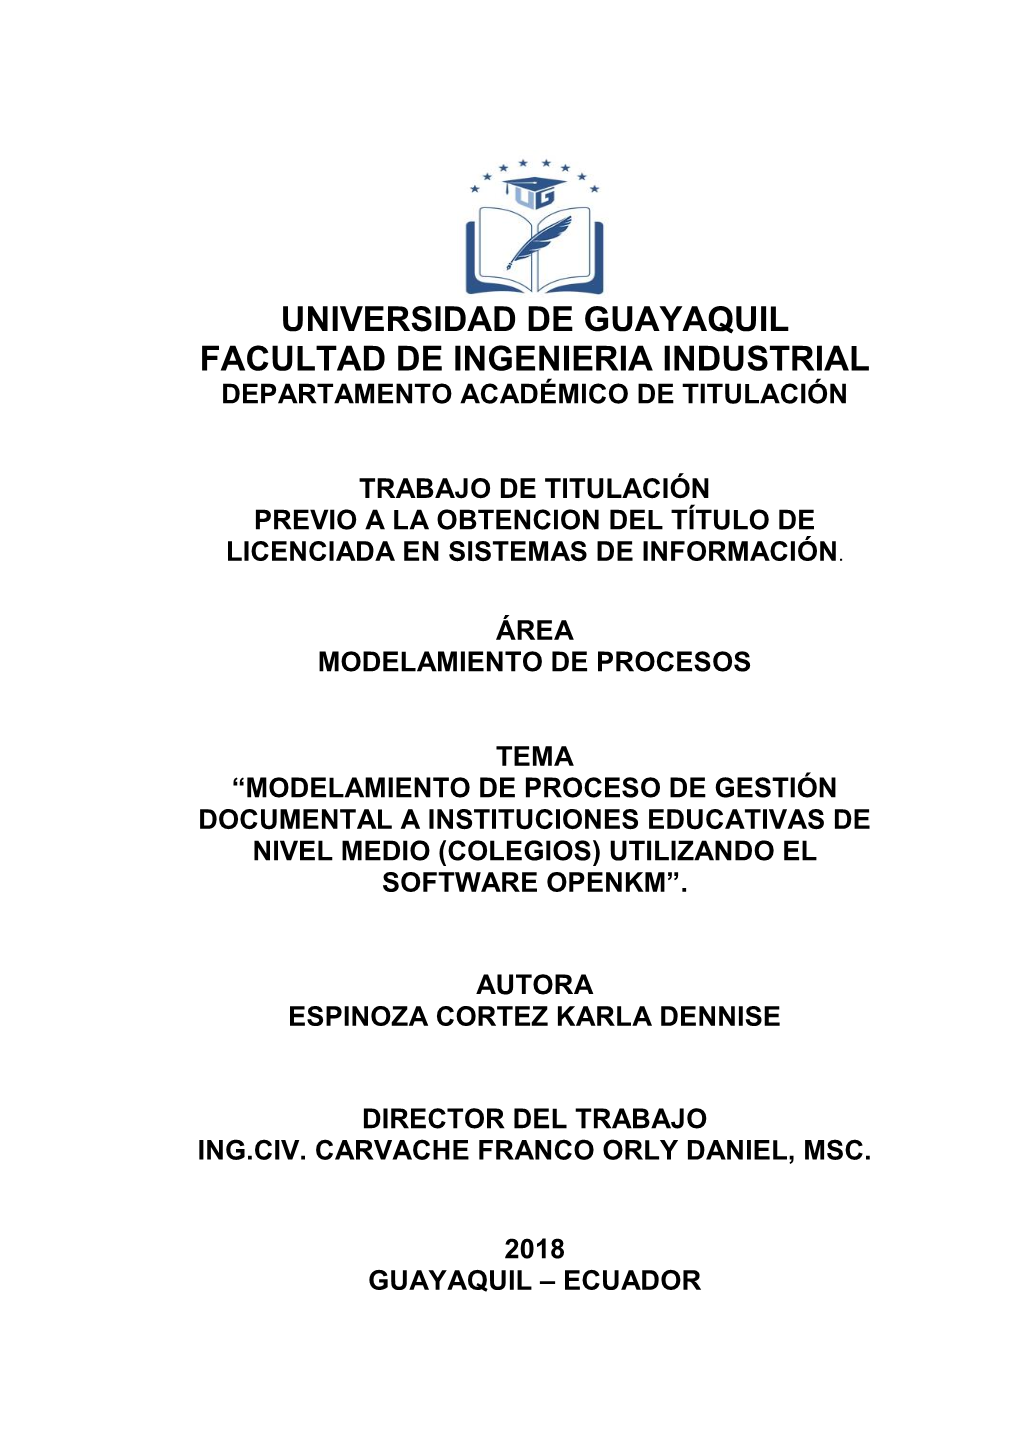 Universidad De Guayaquil Facultad De Ingenieria Industrial Departamento Académico De Titulación